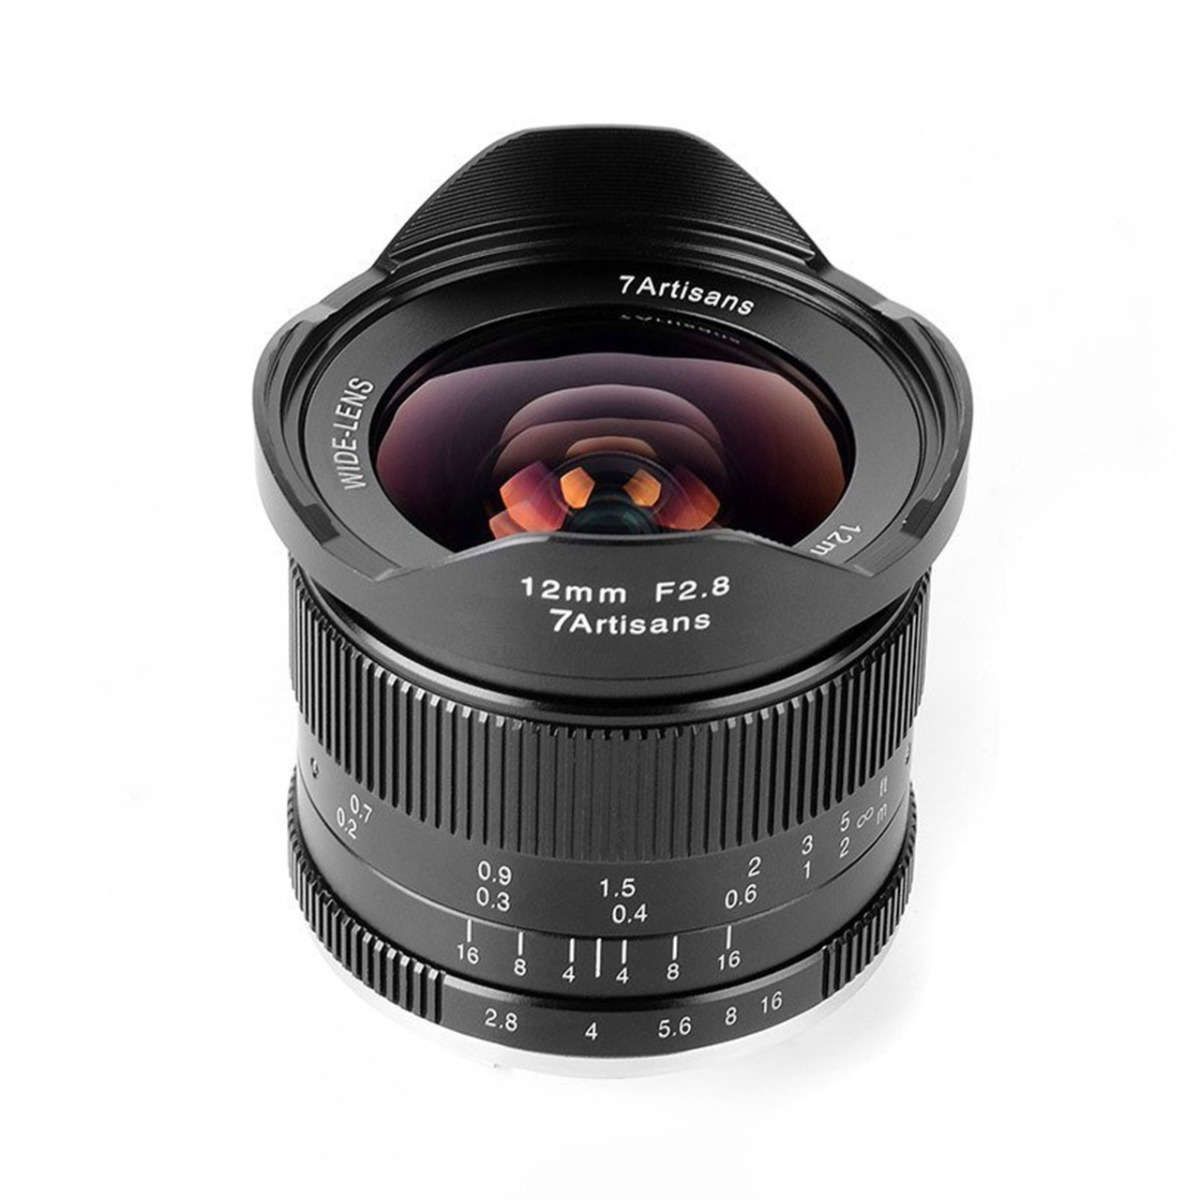 7artisans 12mm F 2.8 Lens For Canon EF M